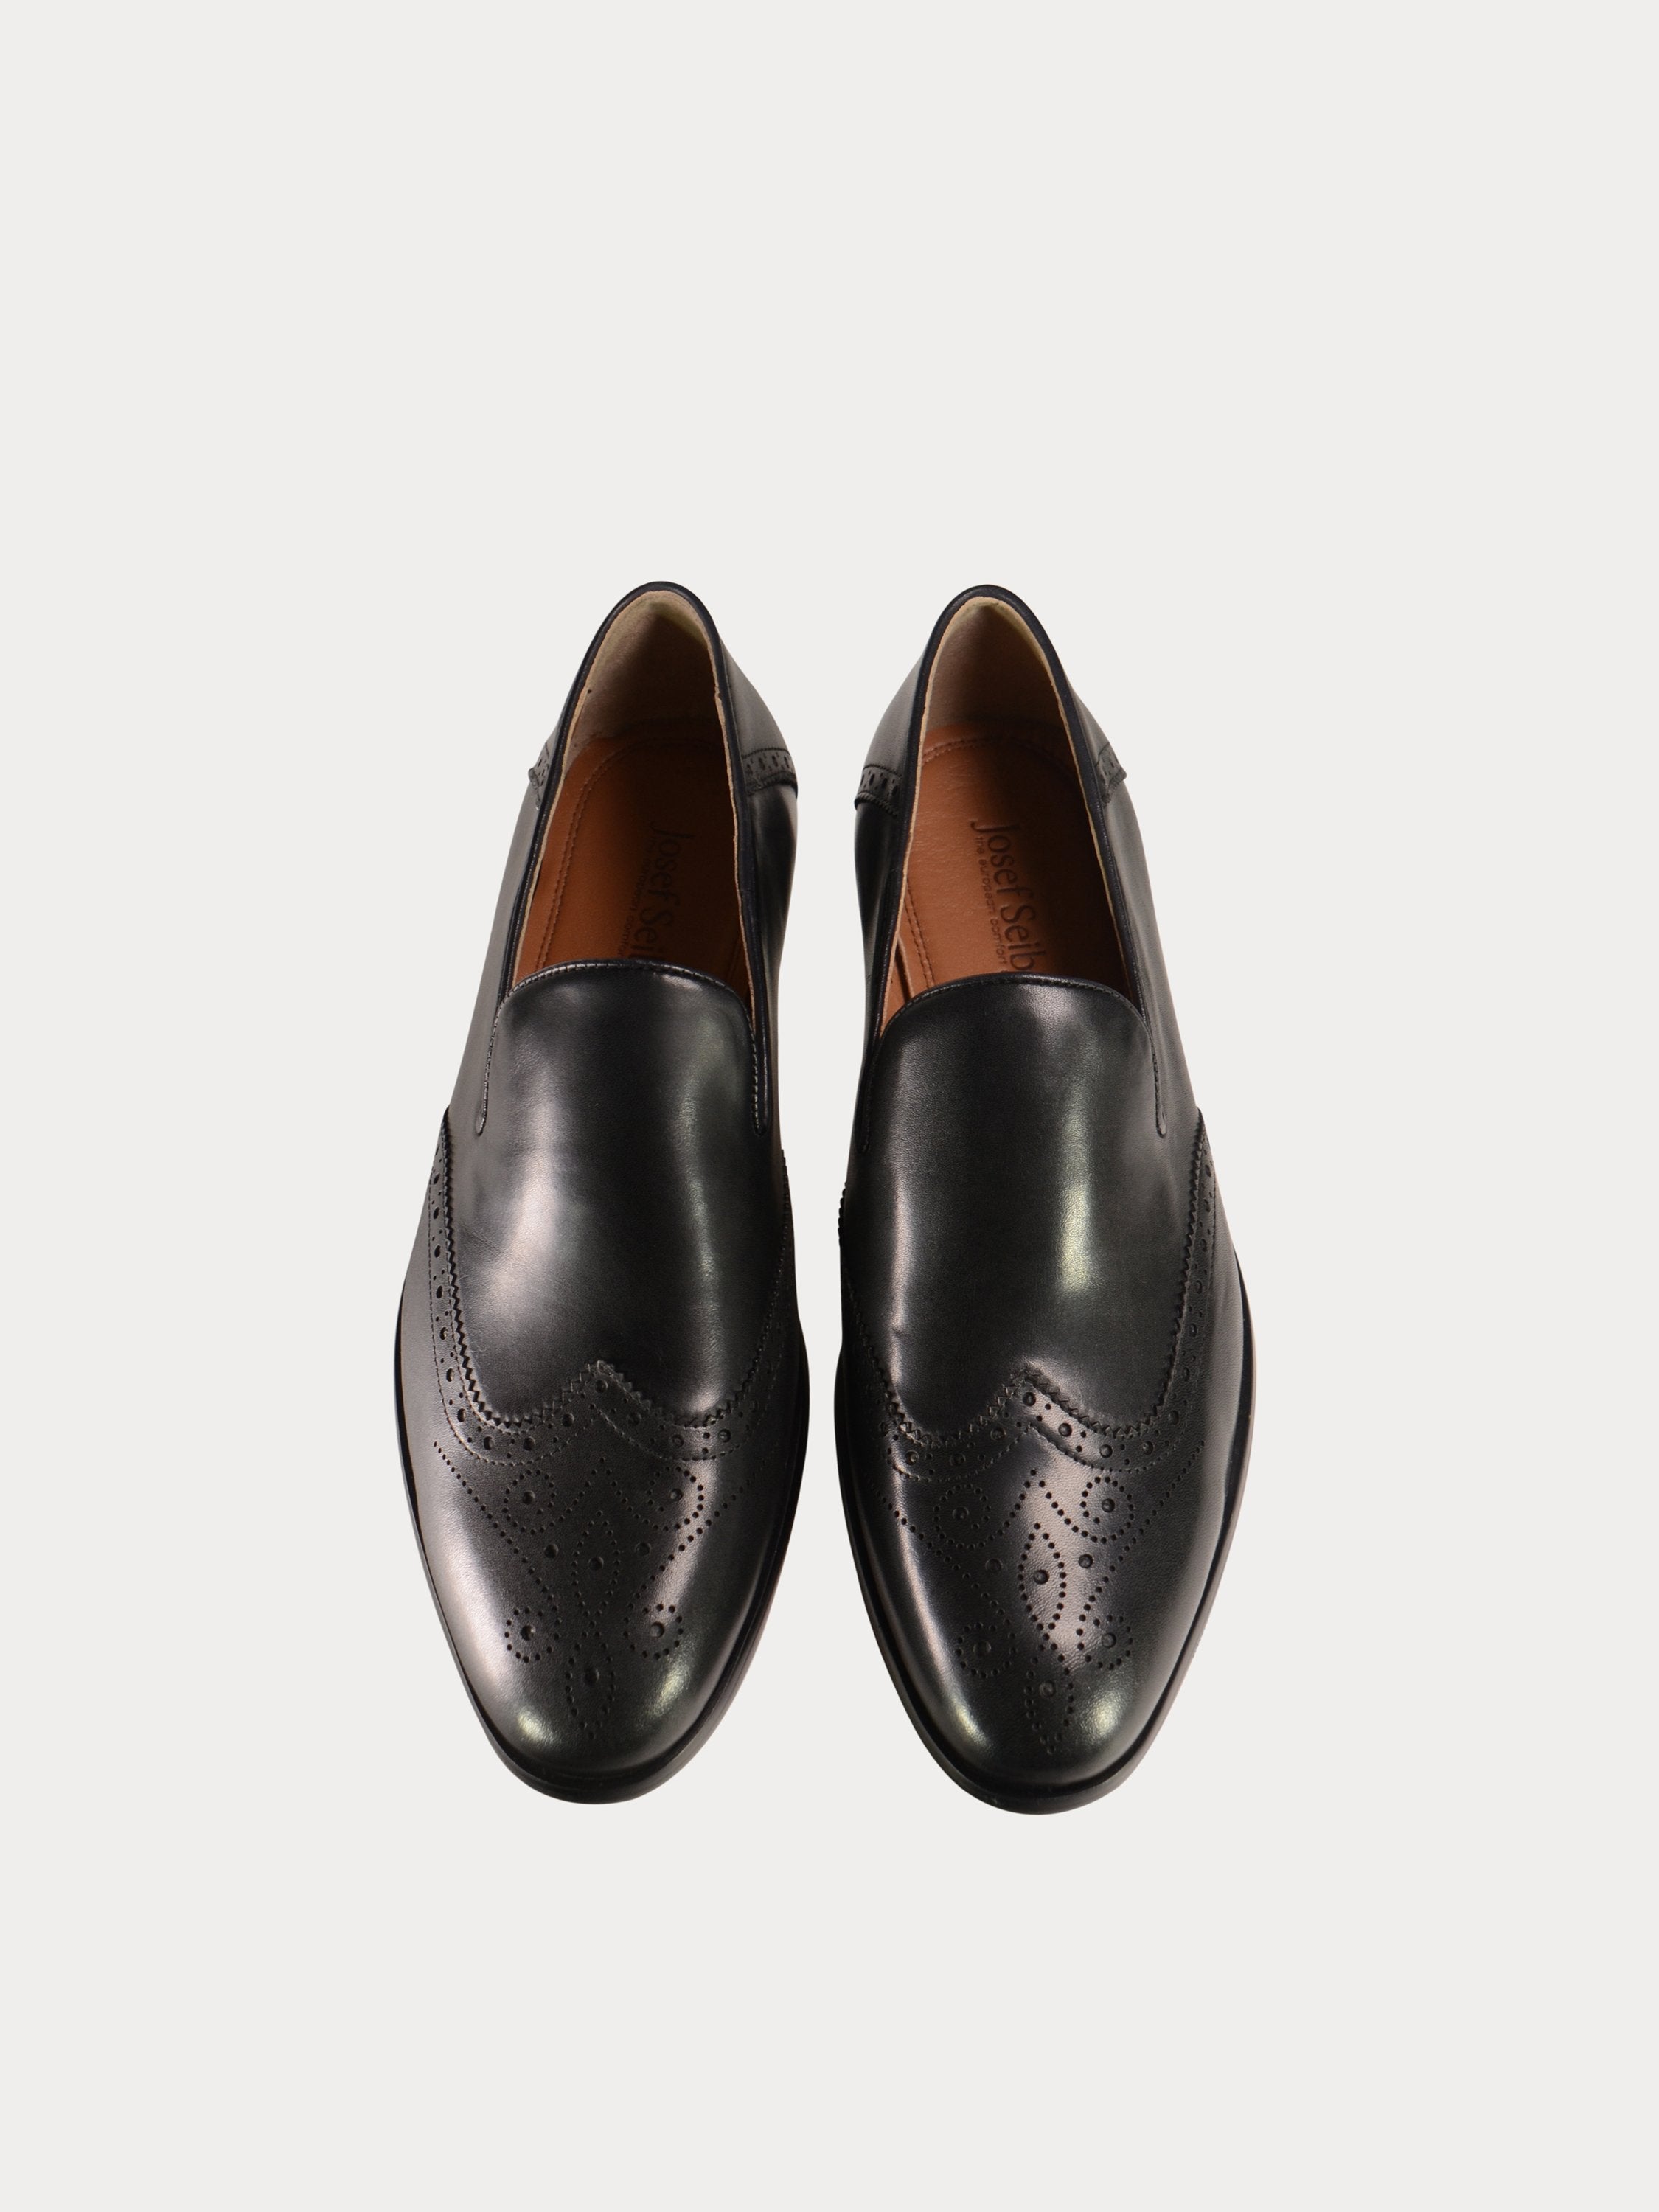 Josef Seibel Slip On Formal Black Leather Shoes #color_Black